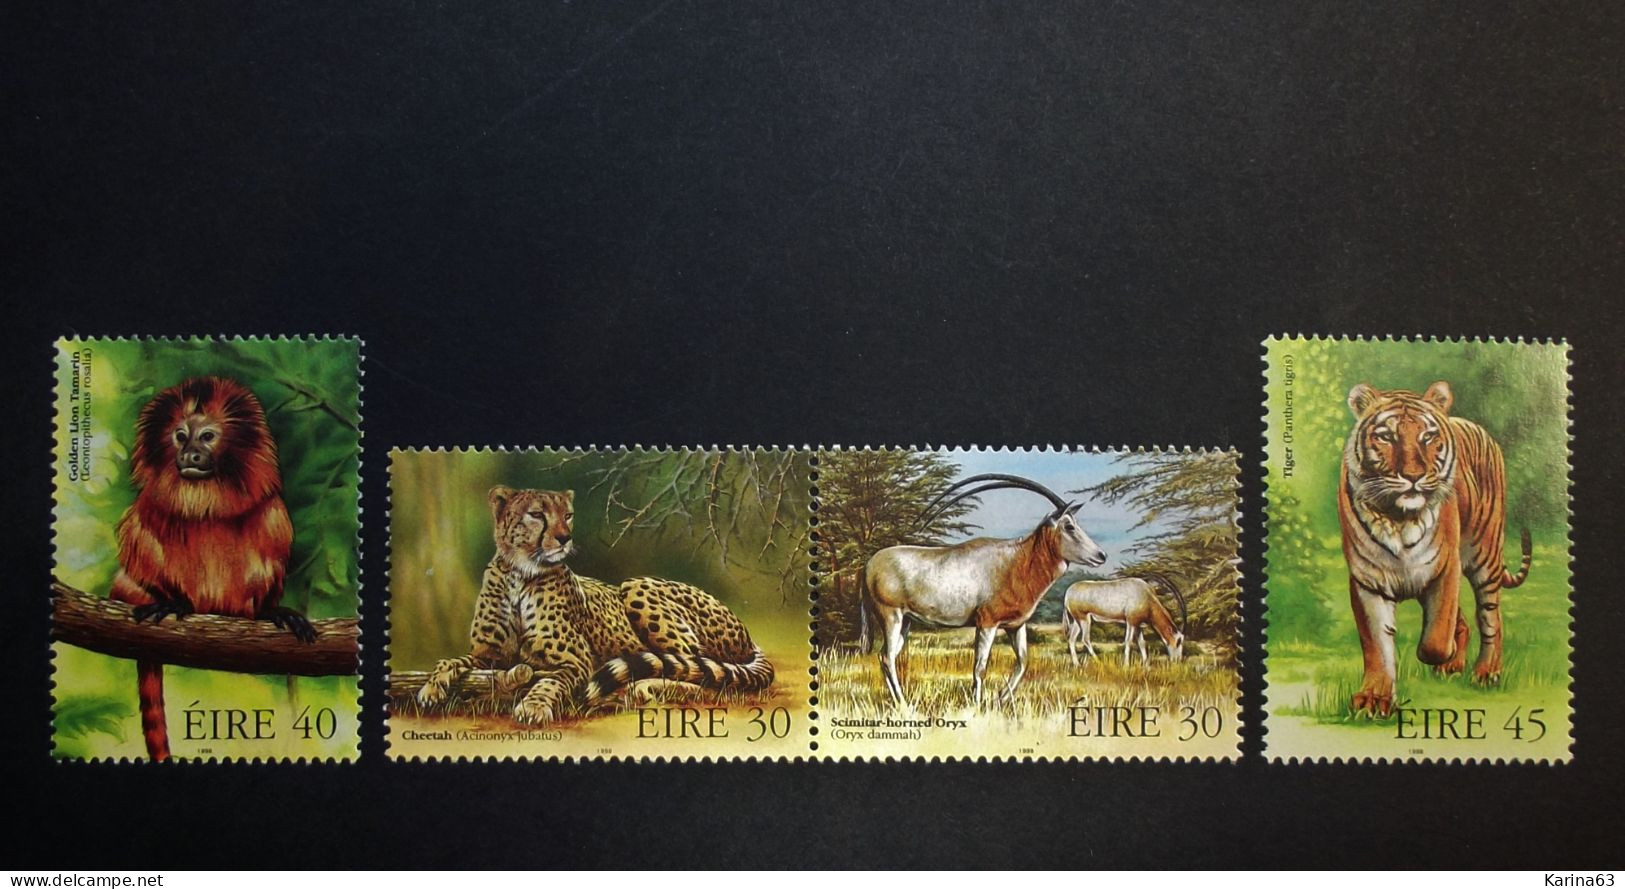 Ireland - Irelande - Eire - 1998 - Y&T N° 1106 / 1109 - (4 Val.) Fauna - Endangered Animals - MNH - Postfris - Neufs